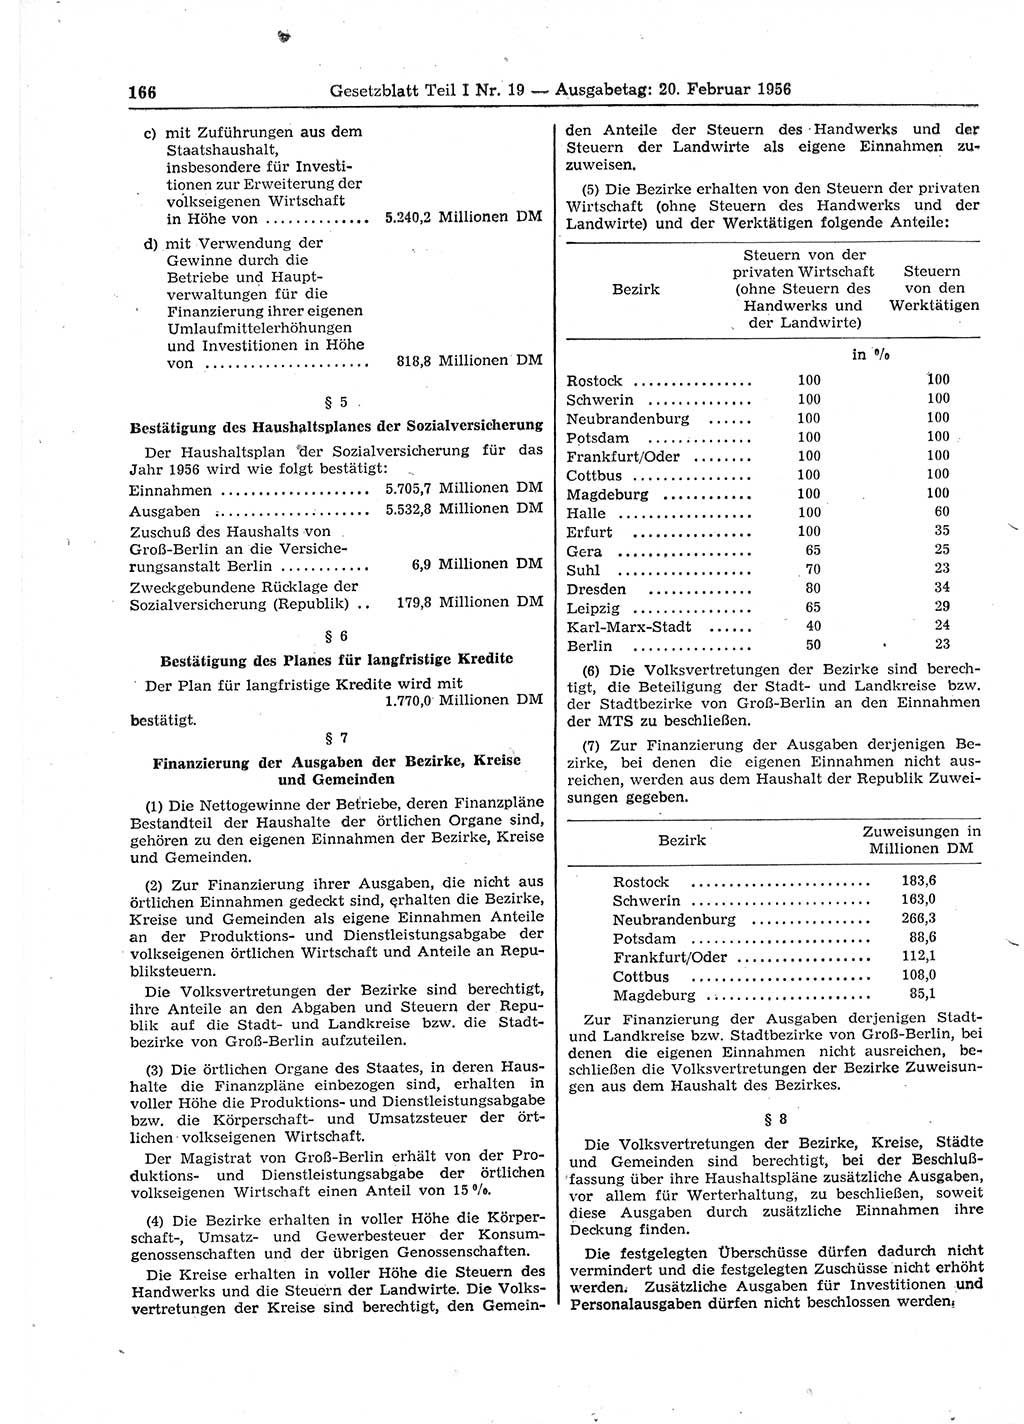 Gesetzblatt (GBl.) der Deutschen Demokratischen Republik (DDR) Teil Ⅰ 1956, Seite 166 (GBl. DDR Ⅰ 1956, S. 166)